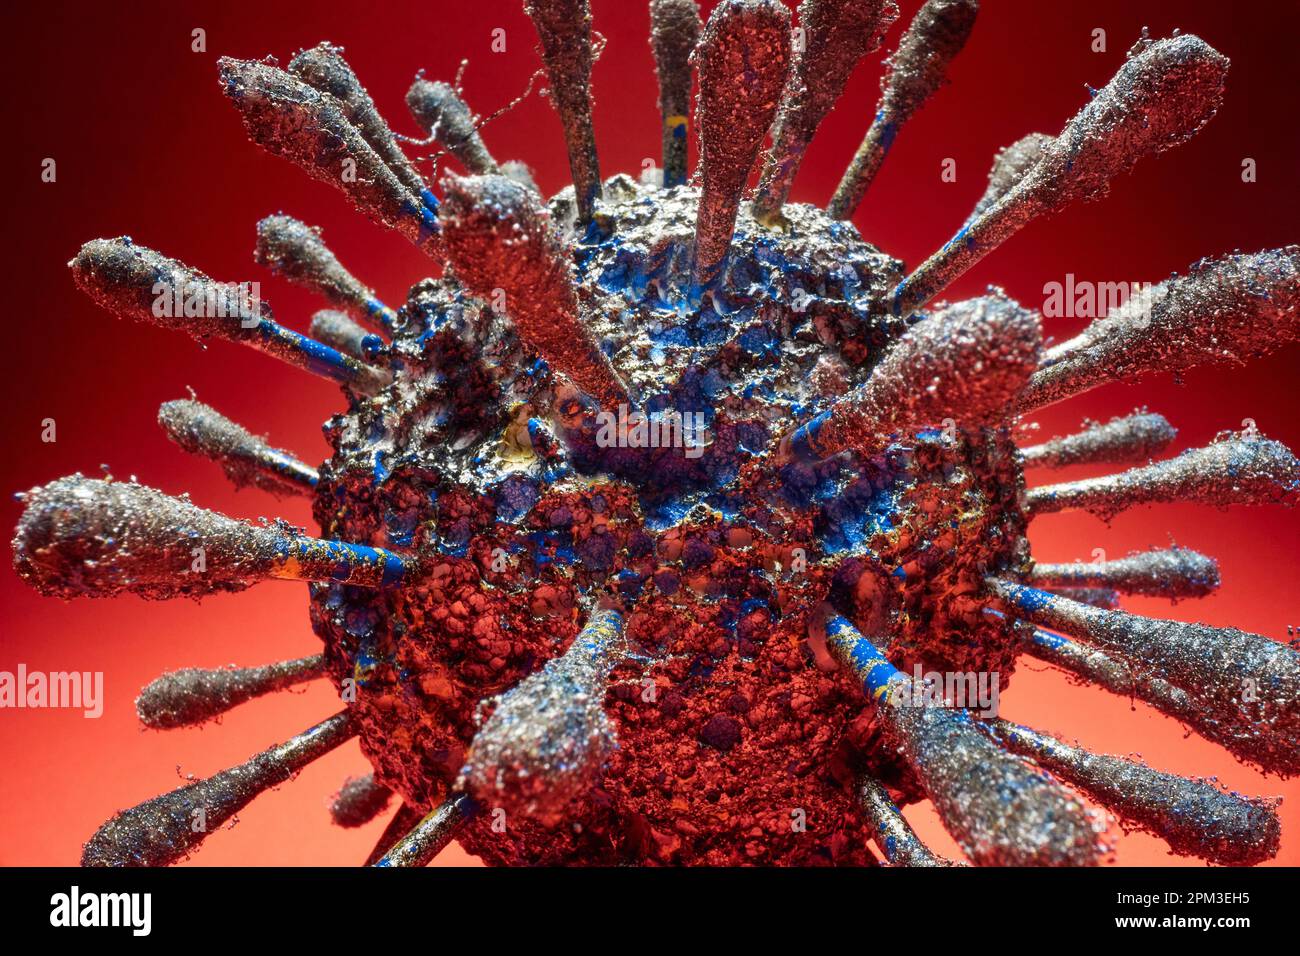 Primo piano di un mockup di virus covido visto attraverso il microscopio nel materiale contagioso. Covid19, corona, pandemia Foto Stock